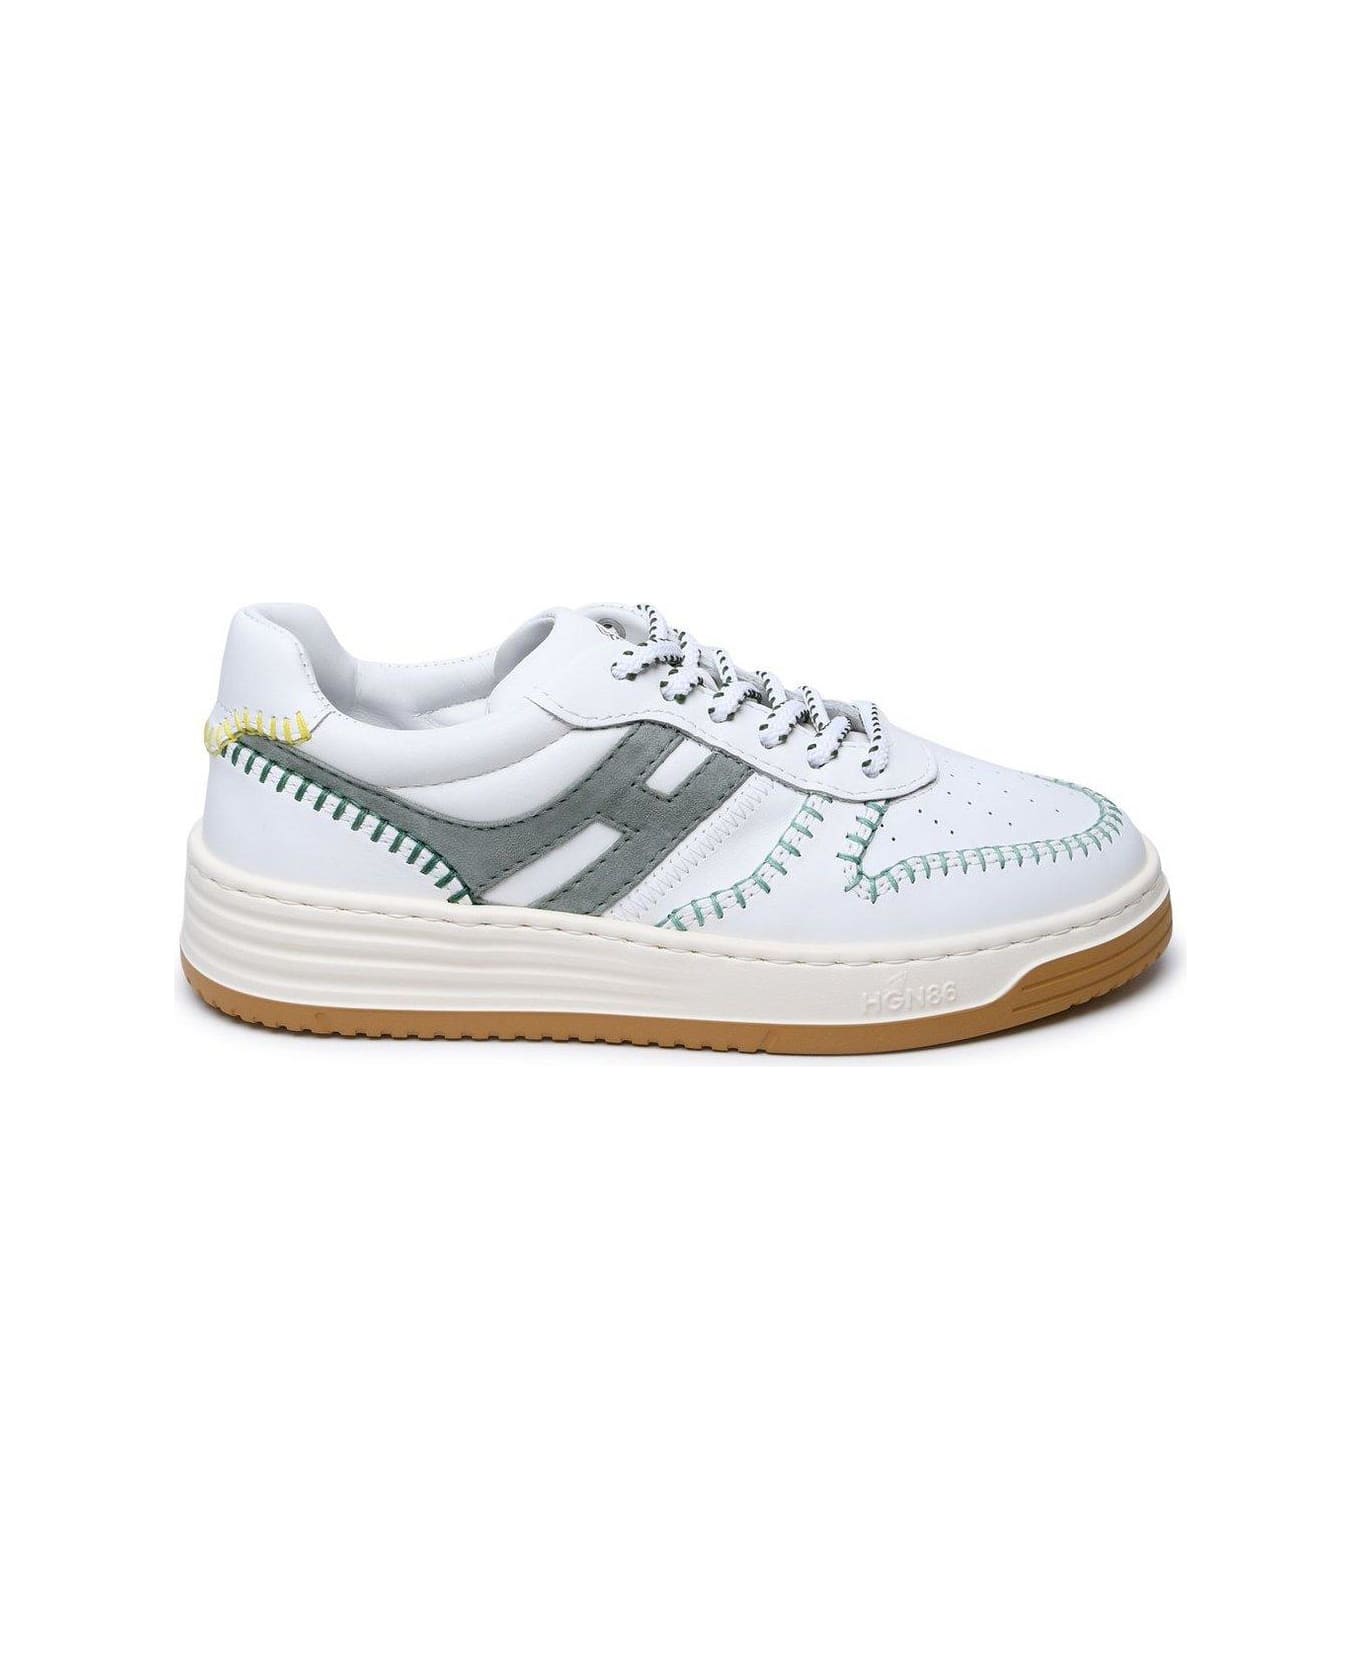 Hogan H630 Low-top Sneakers - AVORIO スニーカー